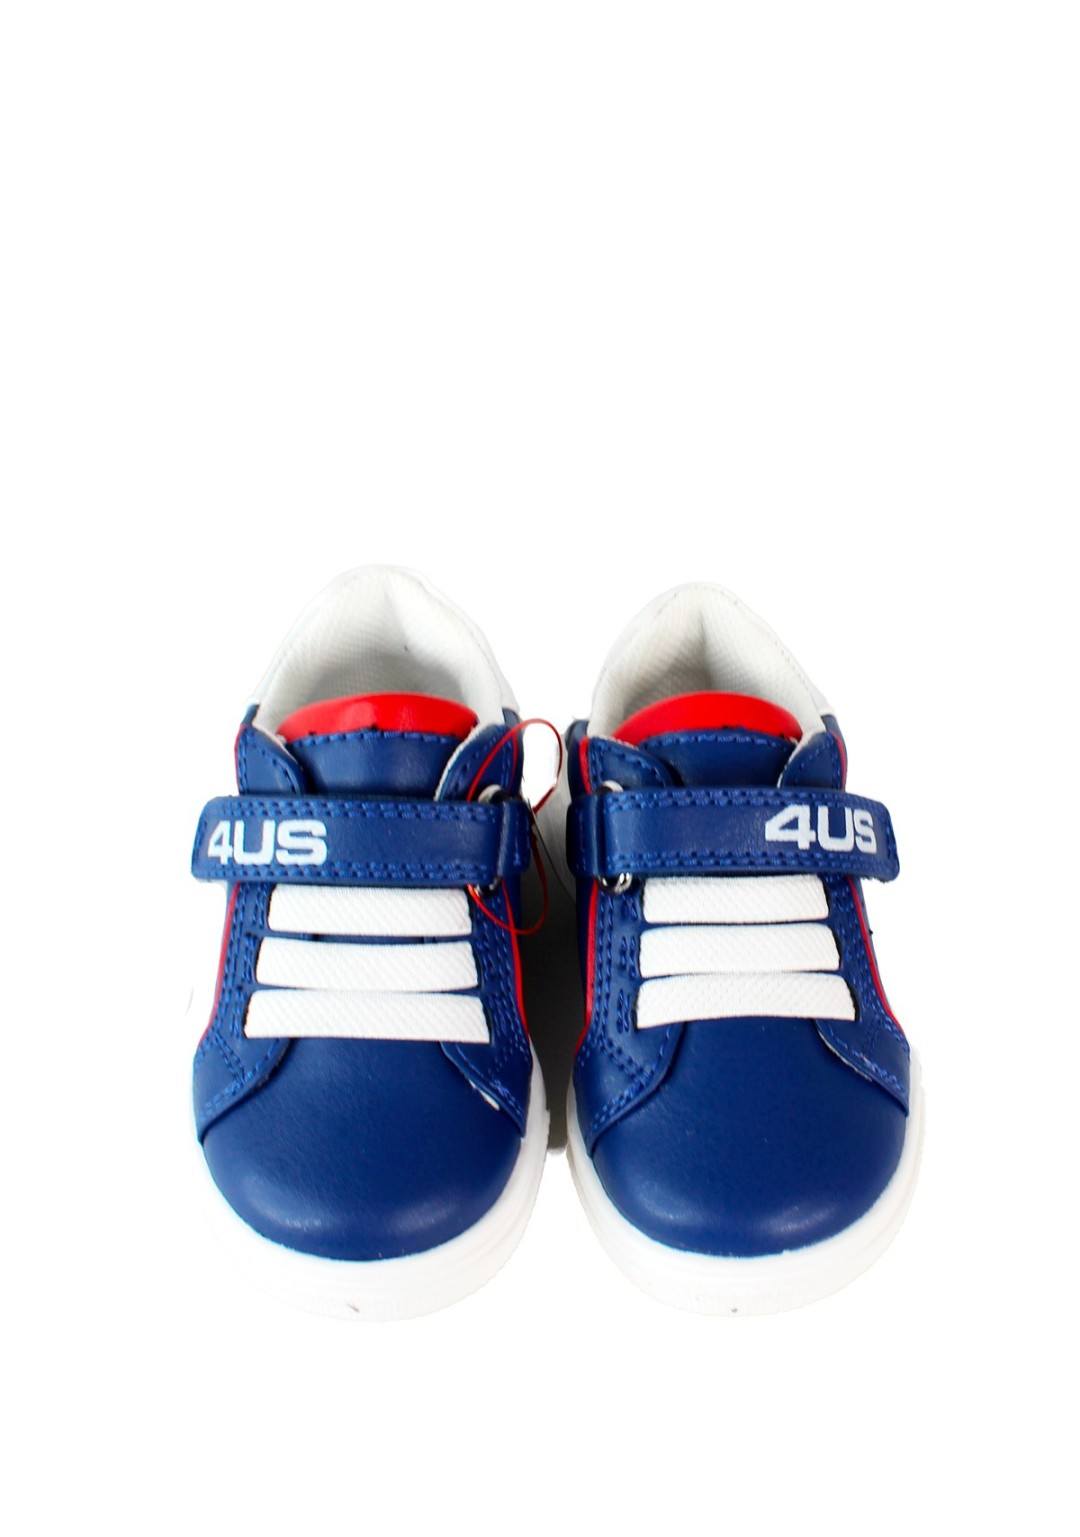 4US - Sneaker Strappo - Bambini e ragazzi - 42470 B